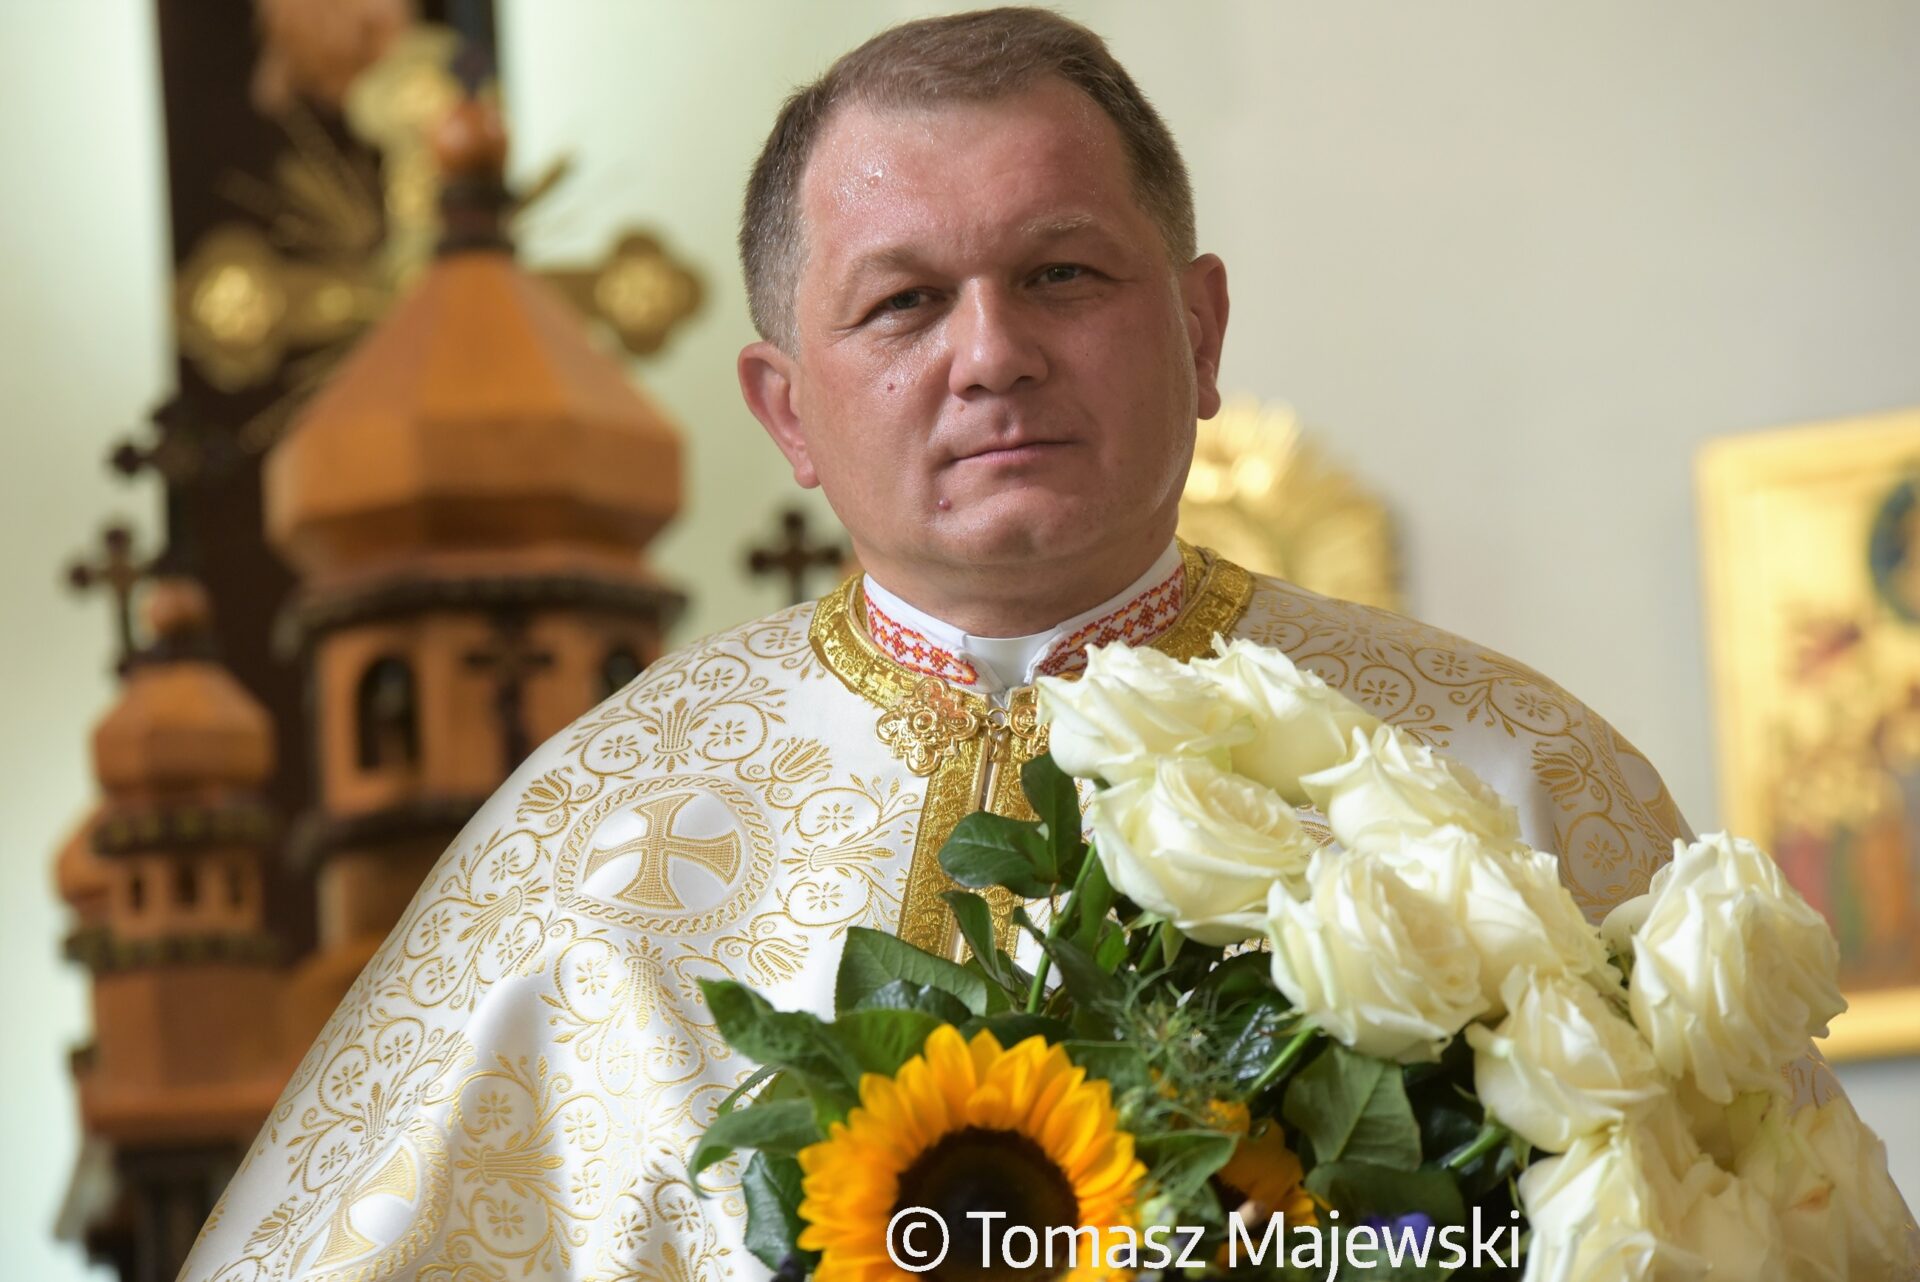 Biskup-nominat A. Trochanowski: Nominację przyjmuję z pokorą